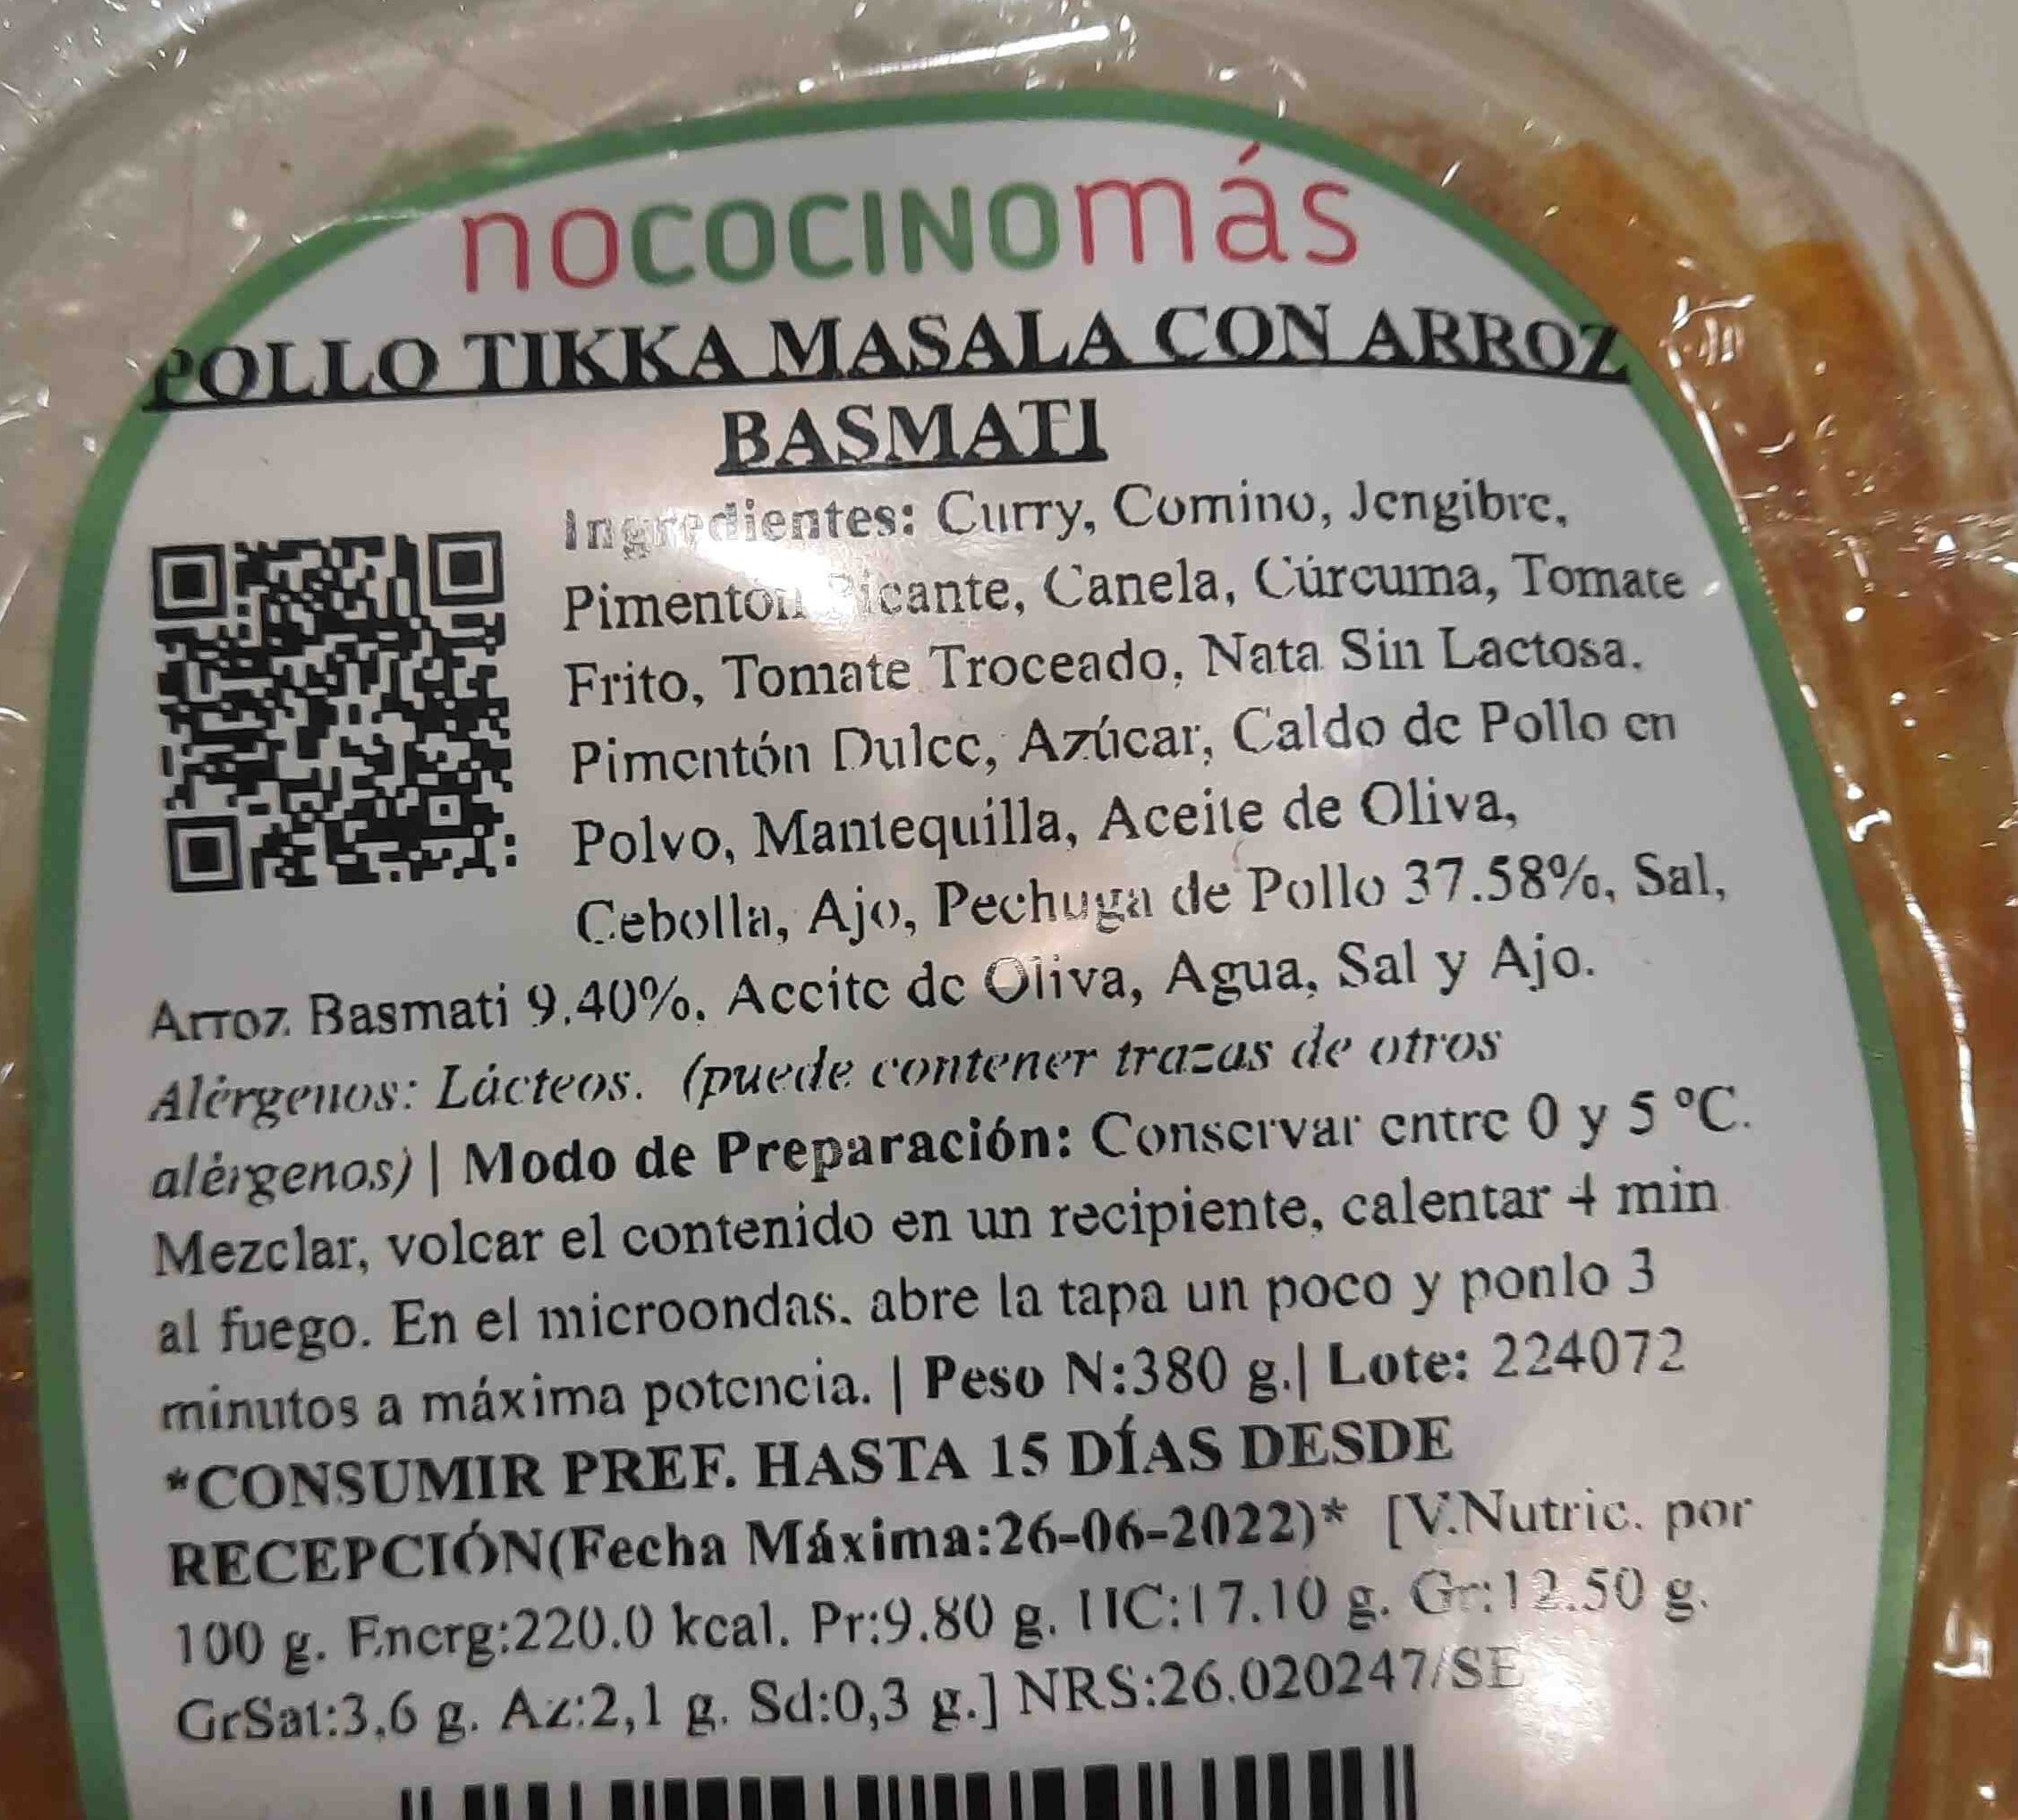 Pollo Tikka Masala con Arroz Basmati - Ingredients - es